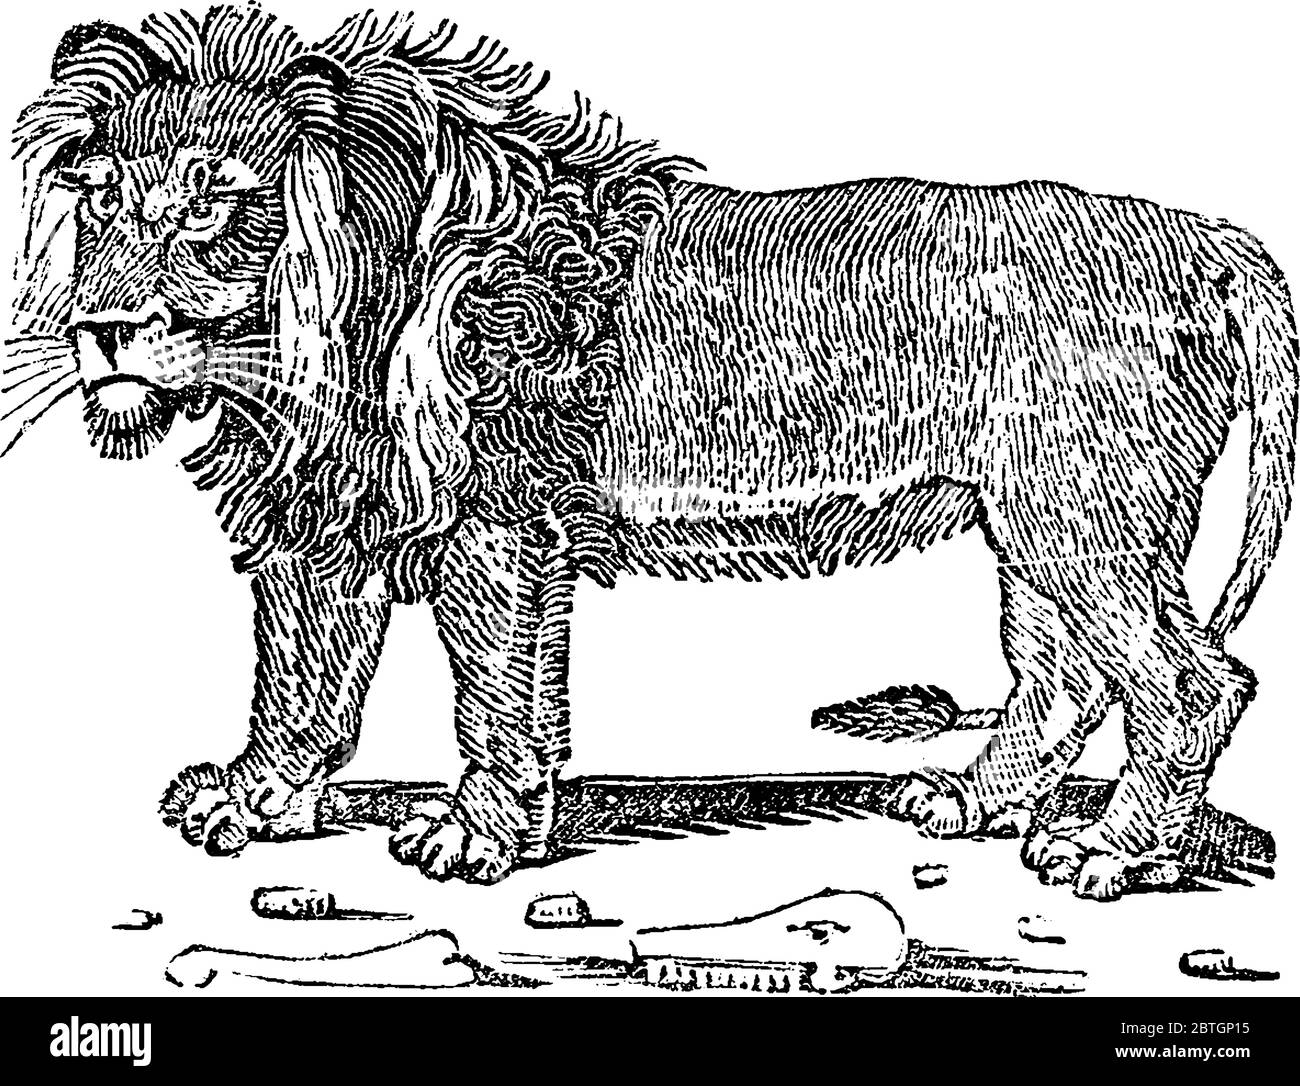 Ein männlicher Löwe auf dem Land mit einem kurzen, abgerundeten Kopf, einem reduzierten Hals und runden Ohren, und einem haarigen Büschel am Ende seines Schwanzes; Säugetier der Familie felid Stock Vektor